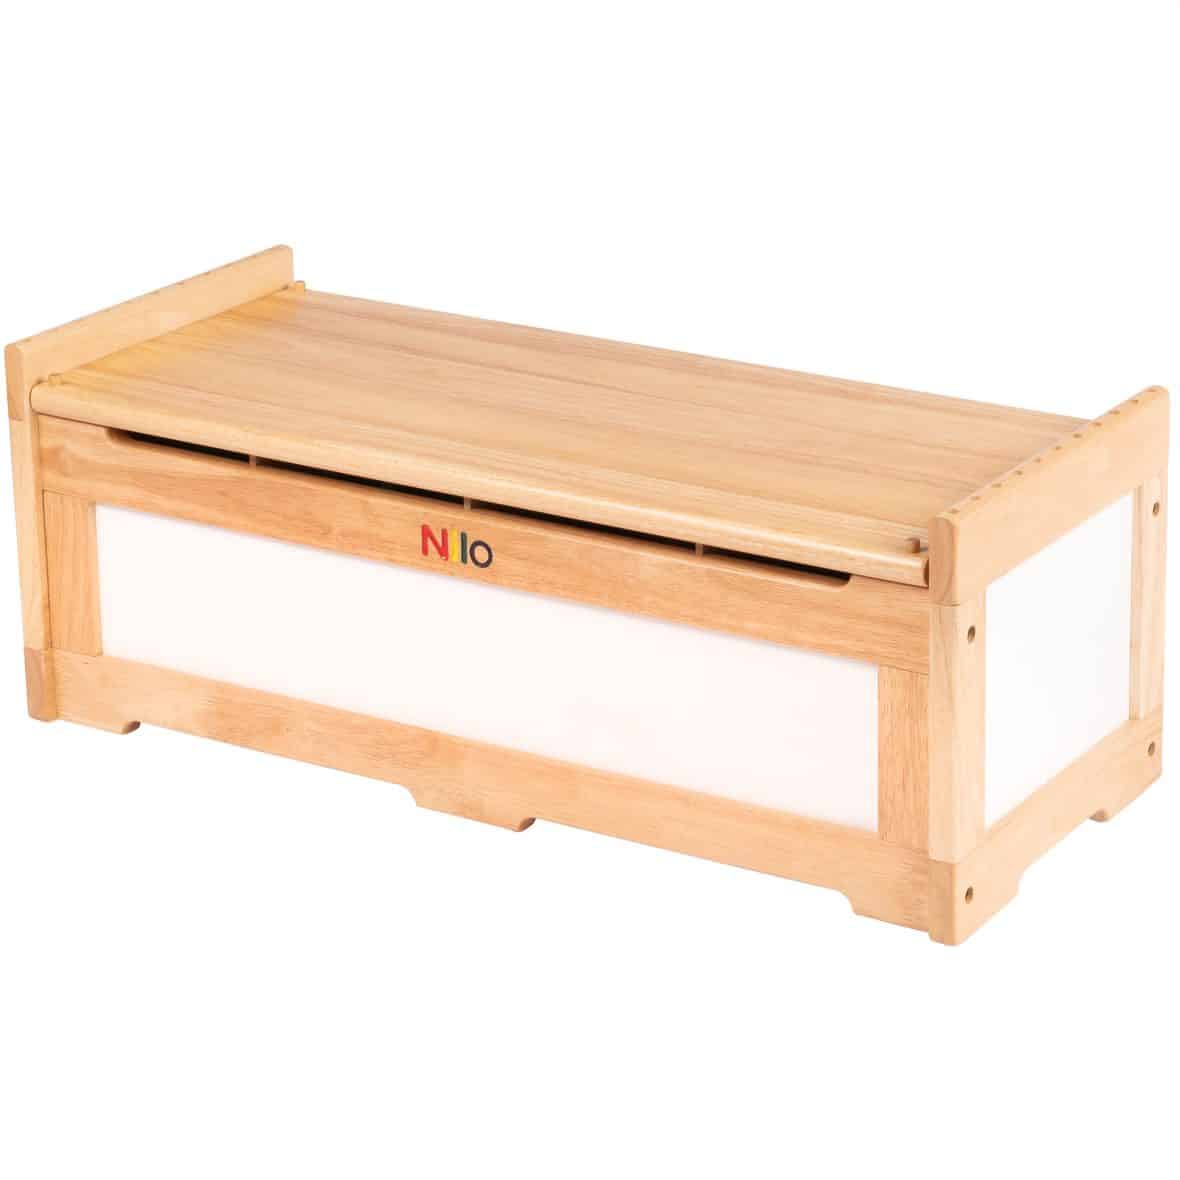 toy storage chest, toy chest, storage bin chest, wooden toy chest for kids, toy chest for children